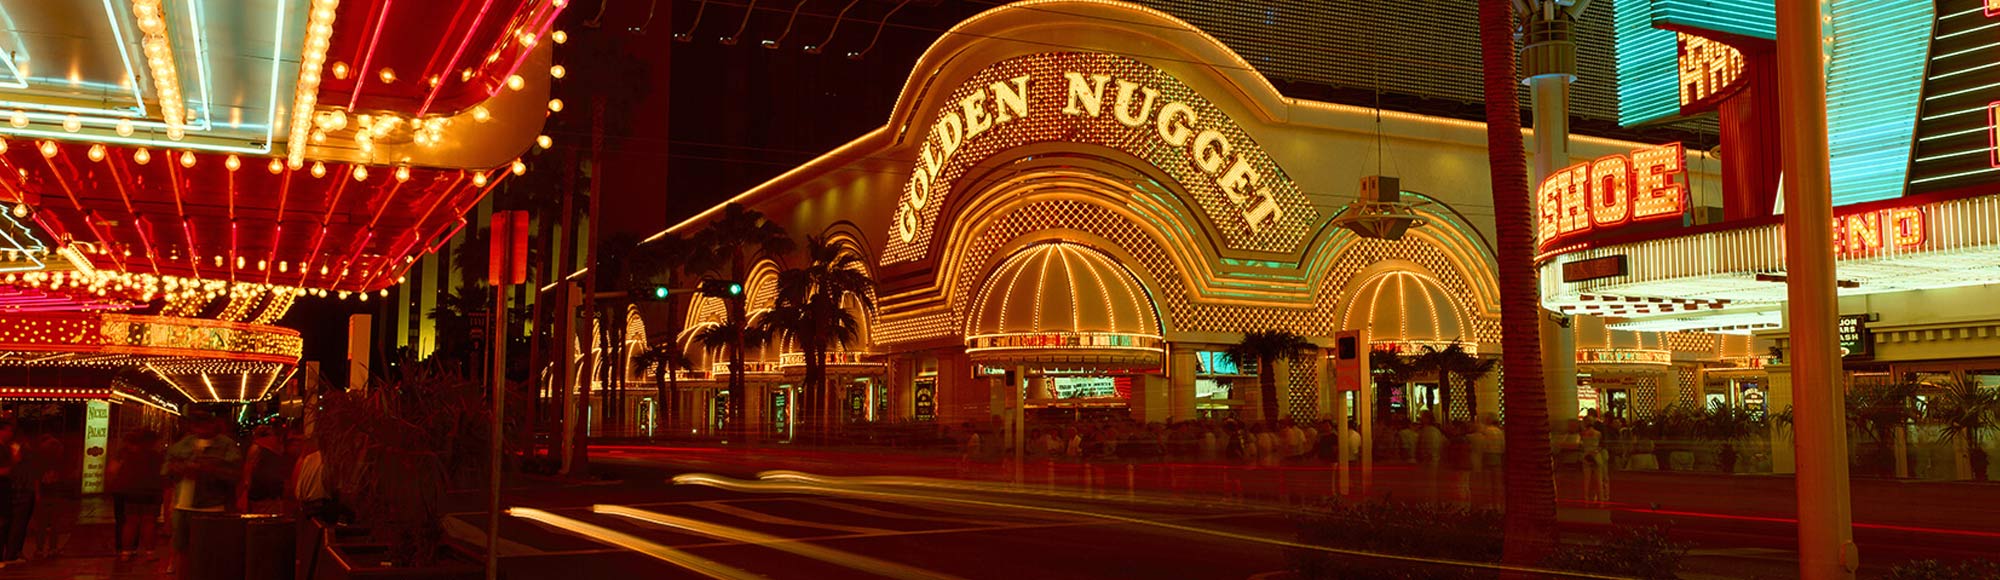 Golden Nugget Hotel In Las Vegas Vegas Com